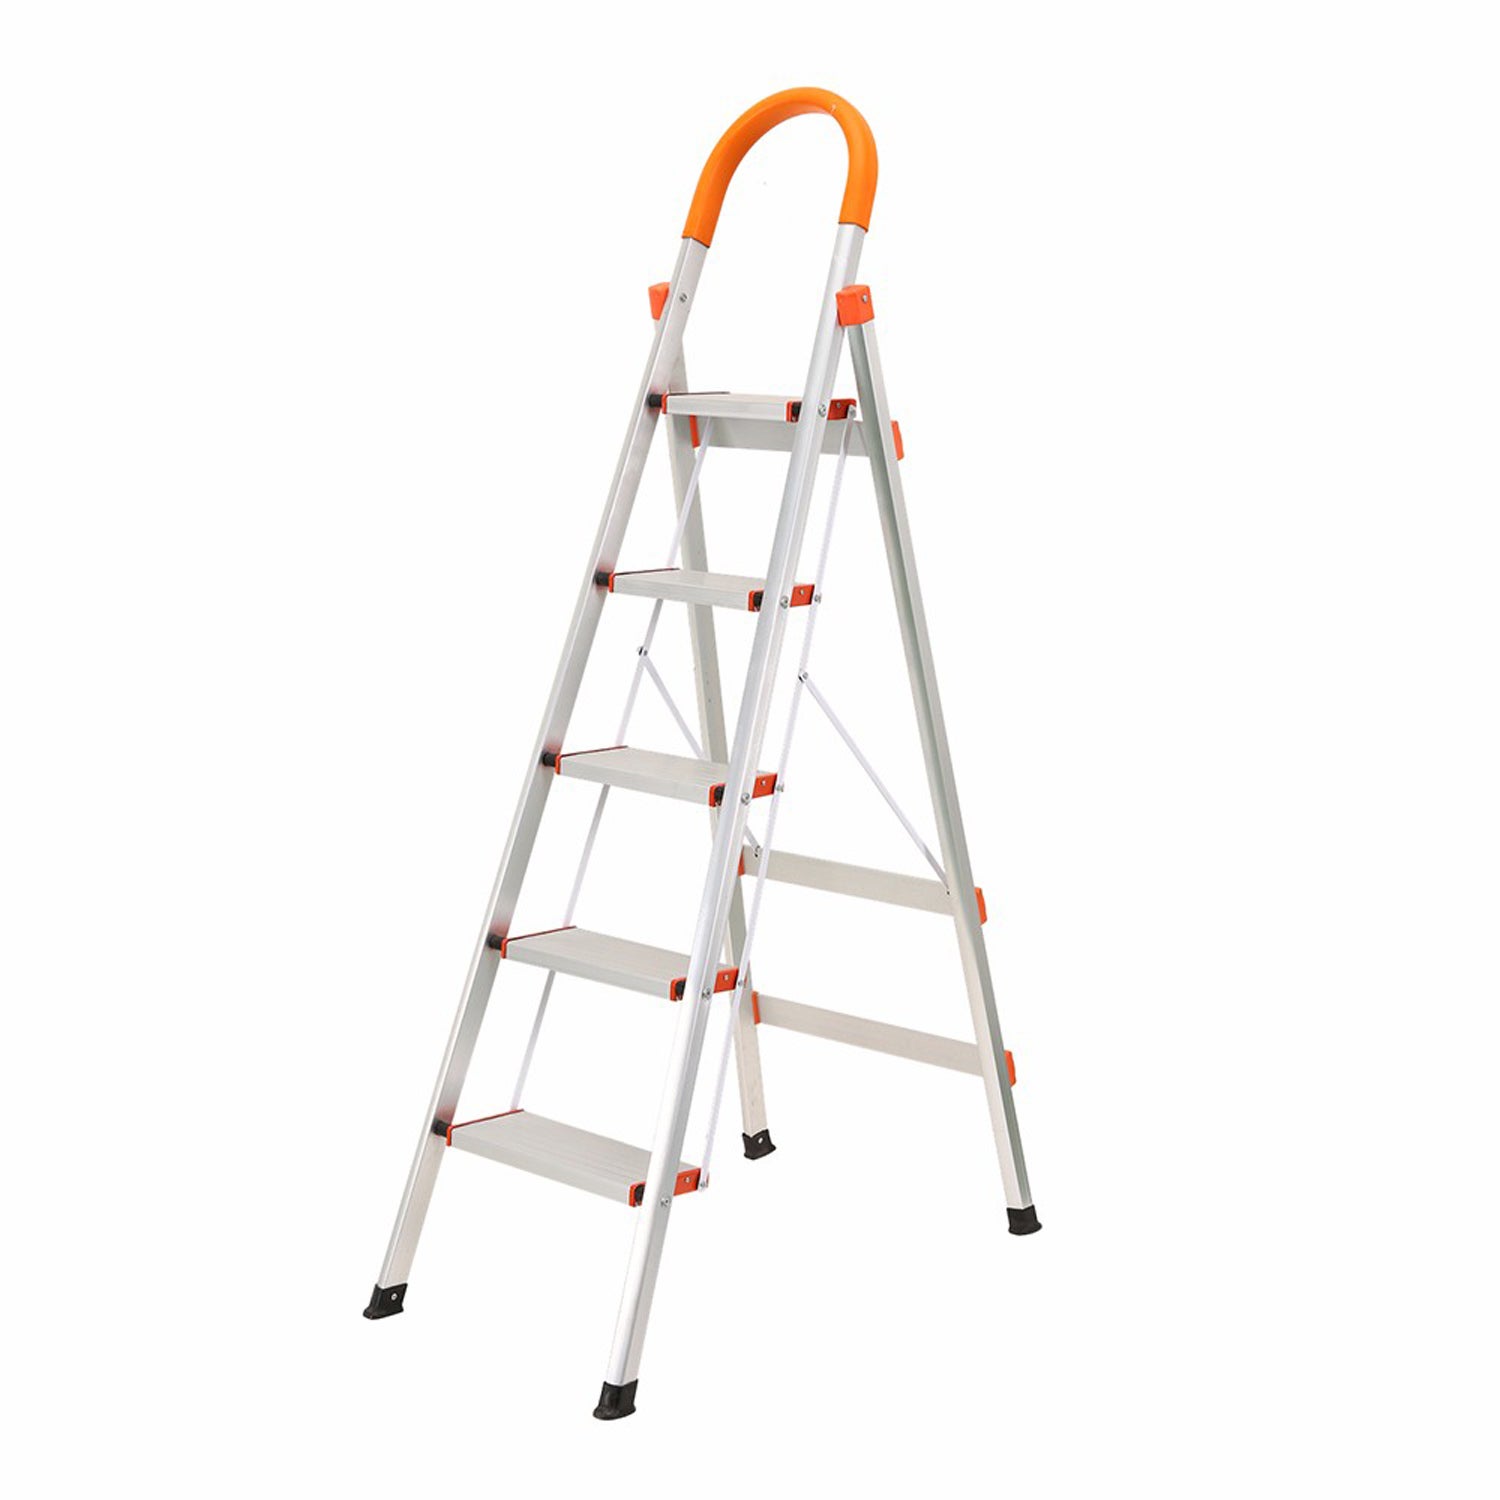 5 Step Ladder Aluminium Multi Purpose For Household Office Foldable Non Slip